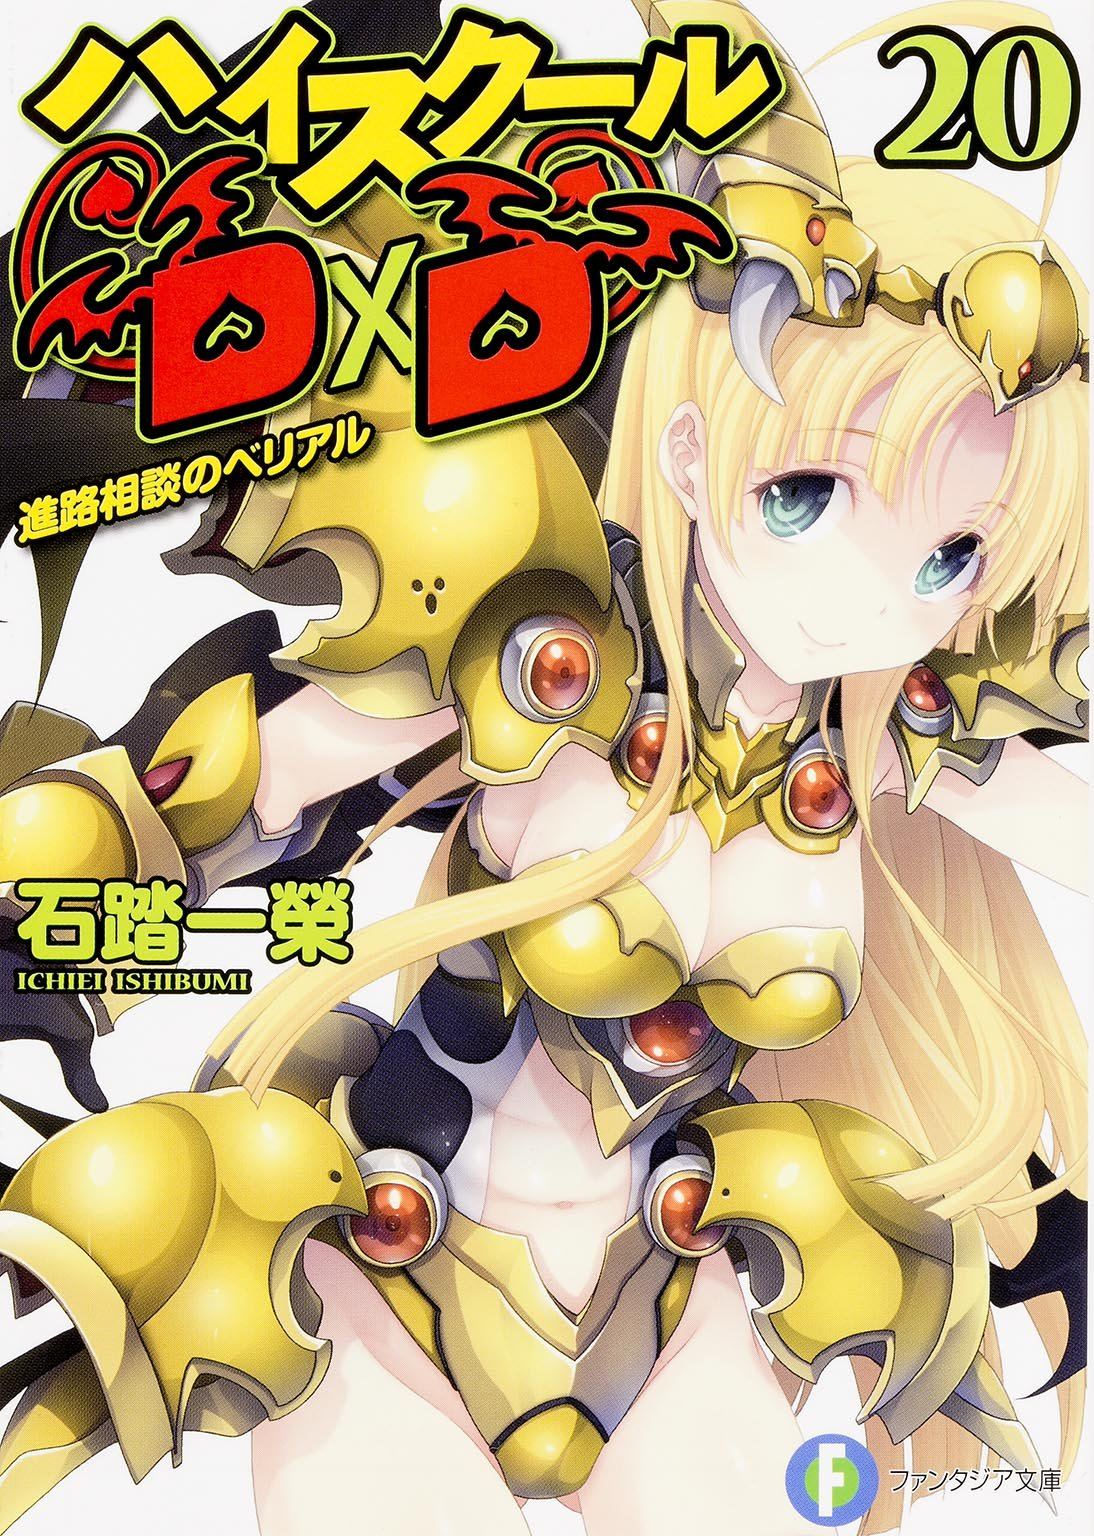 High School DxD, Vol. 1 - manga (High School DxD (manga), 1)